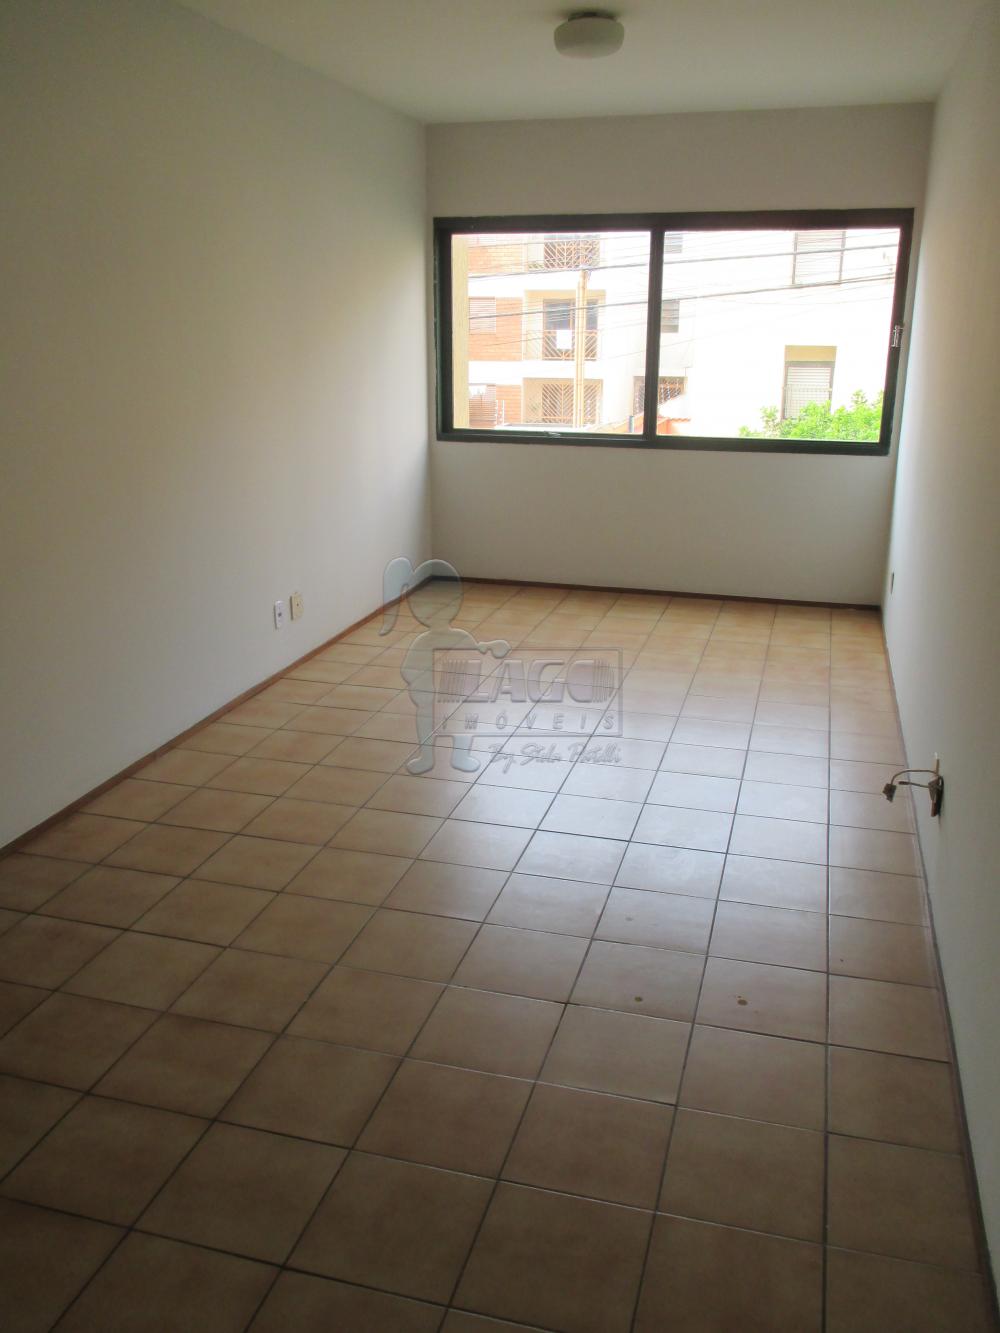 Alugar Apartamentos / Padrão em Ribeirão Preto R$ 1.180,00 - Foto 1